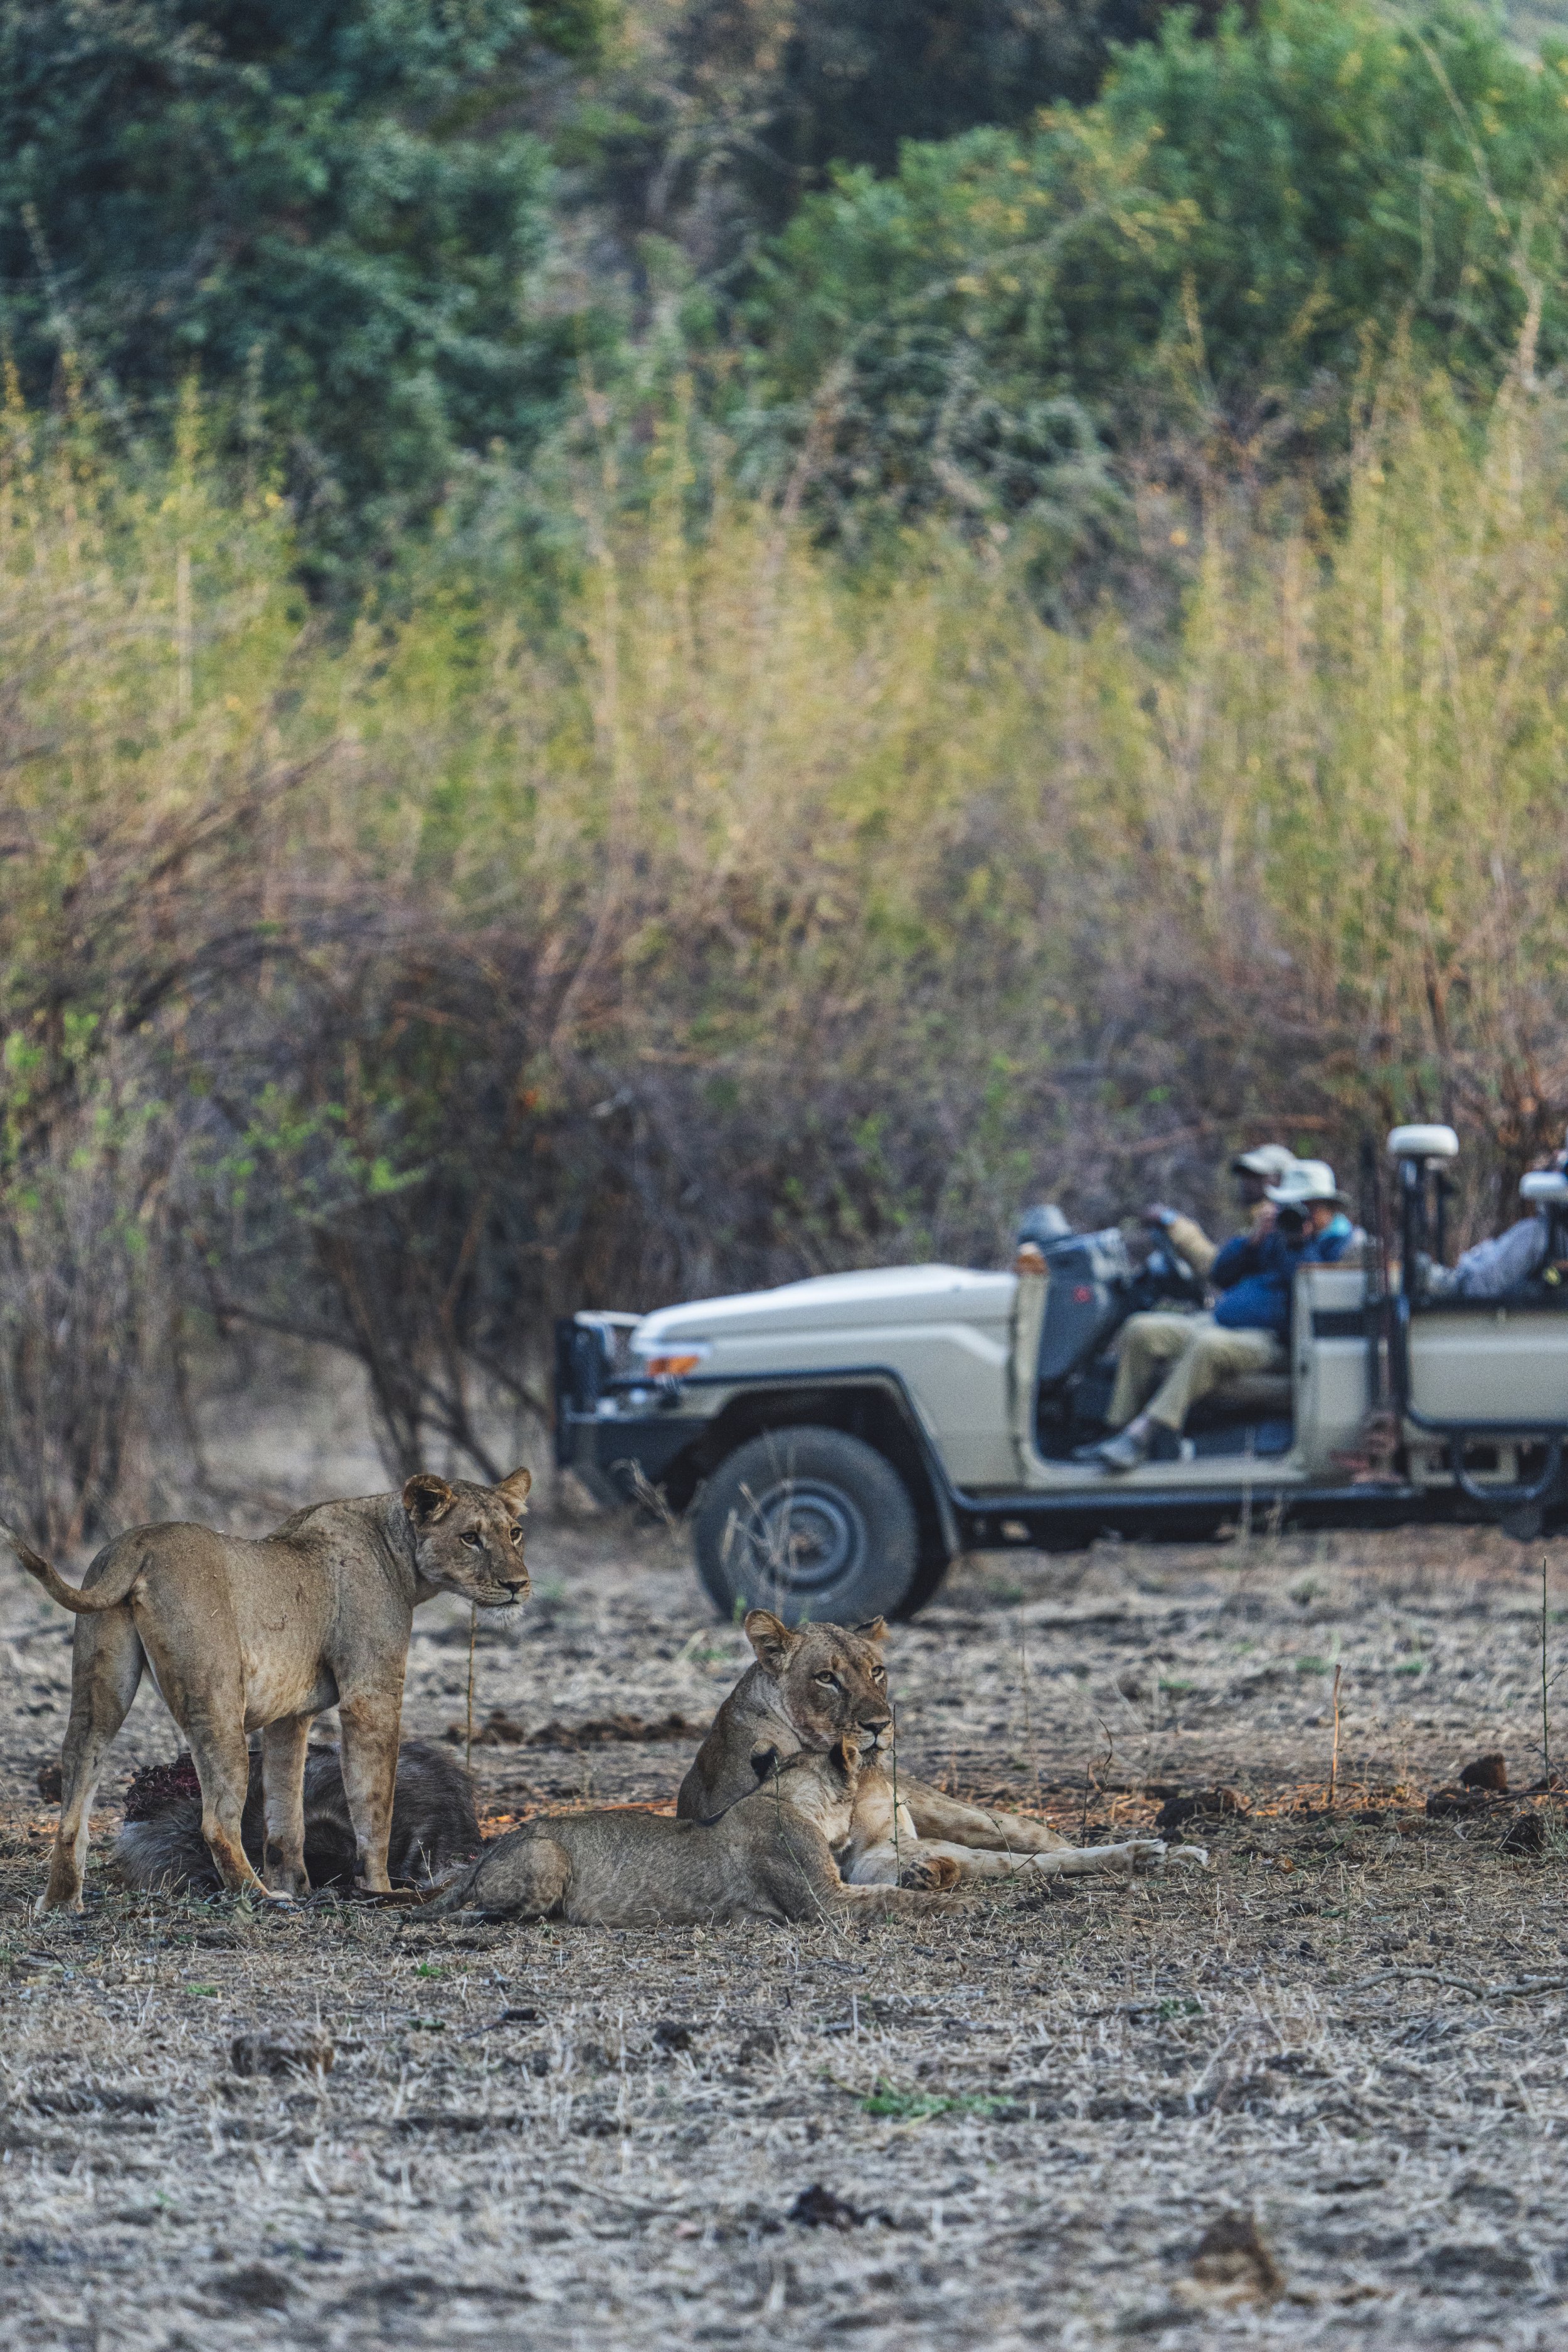 Unique safari experience in Zambia provided by Anabezi